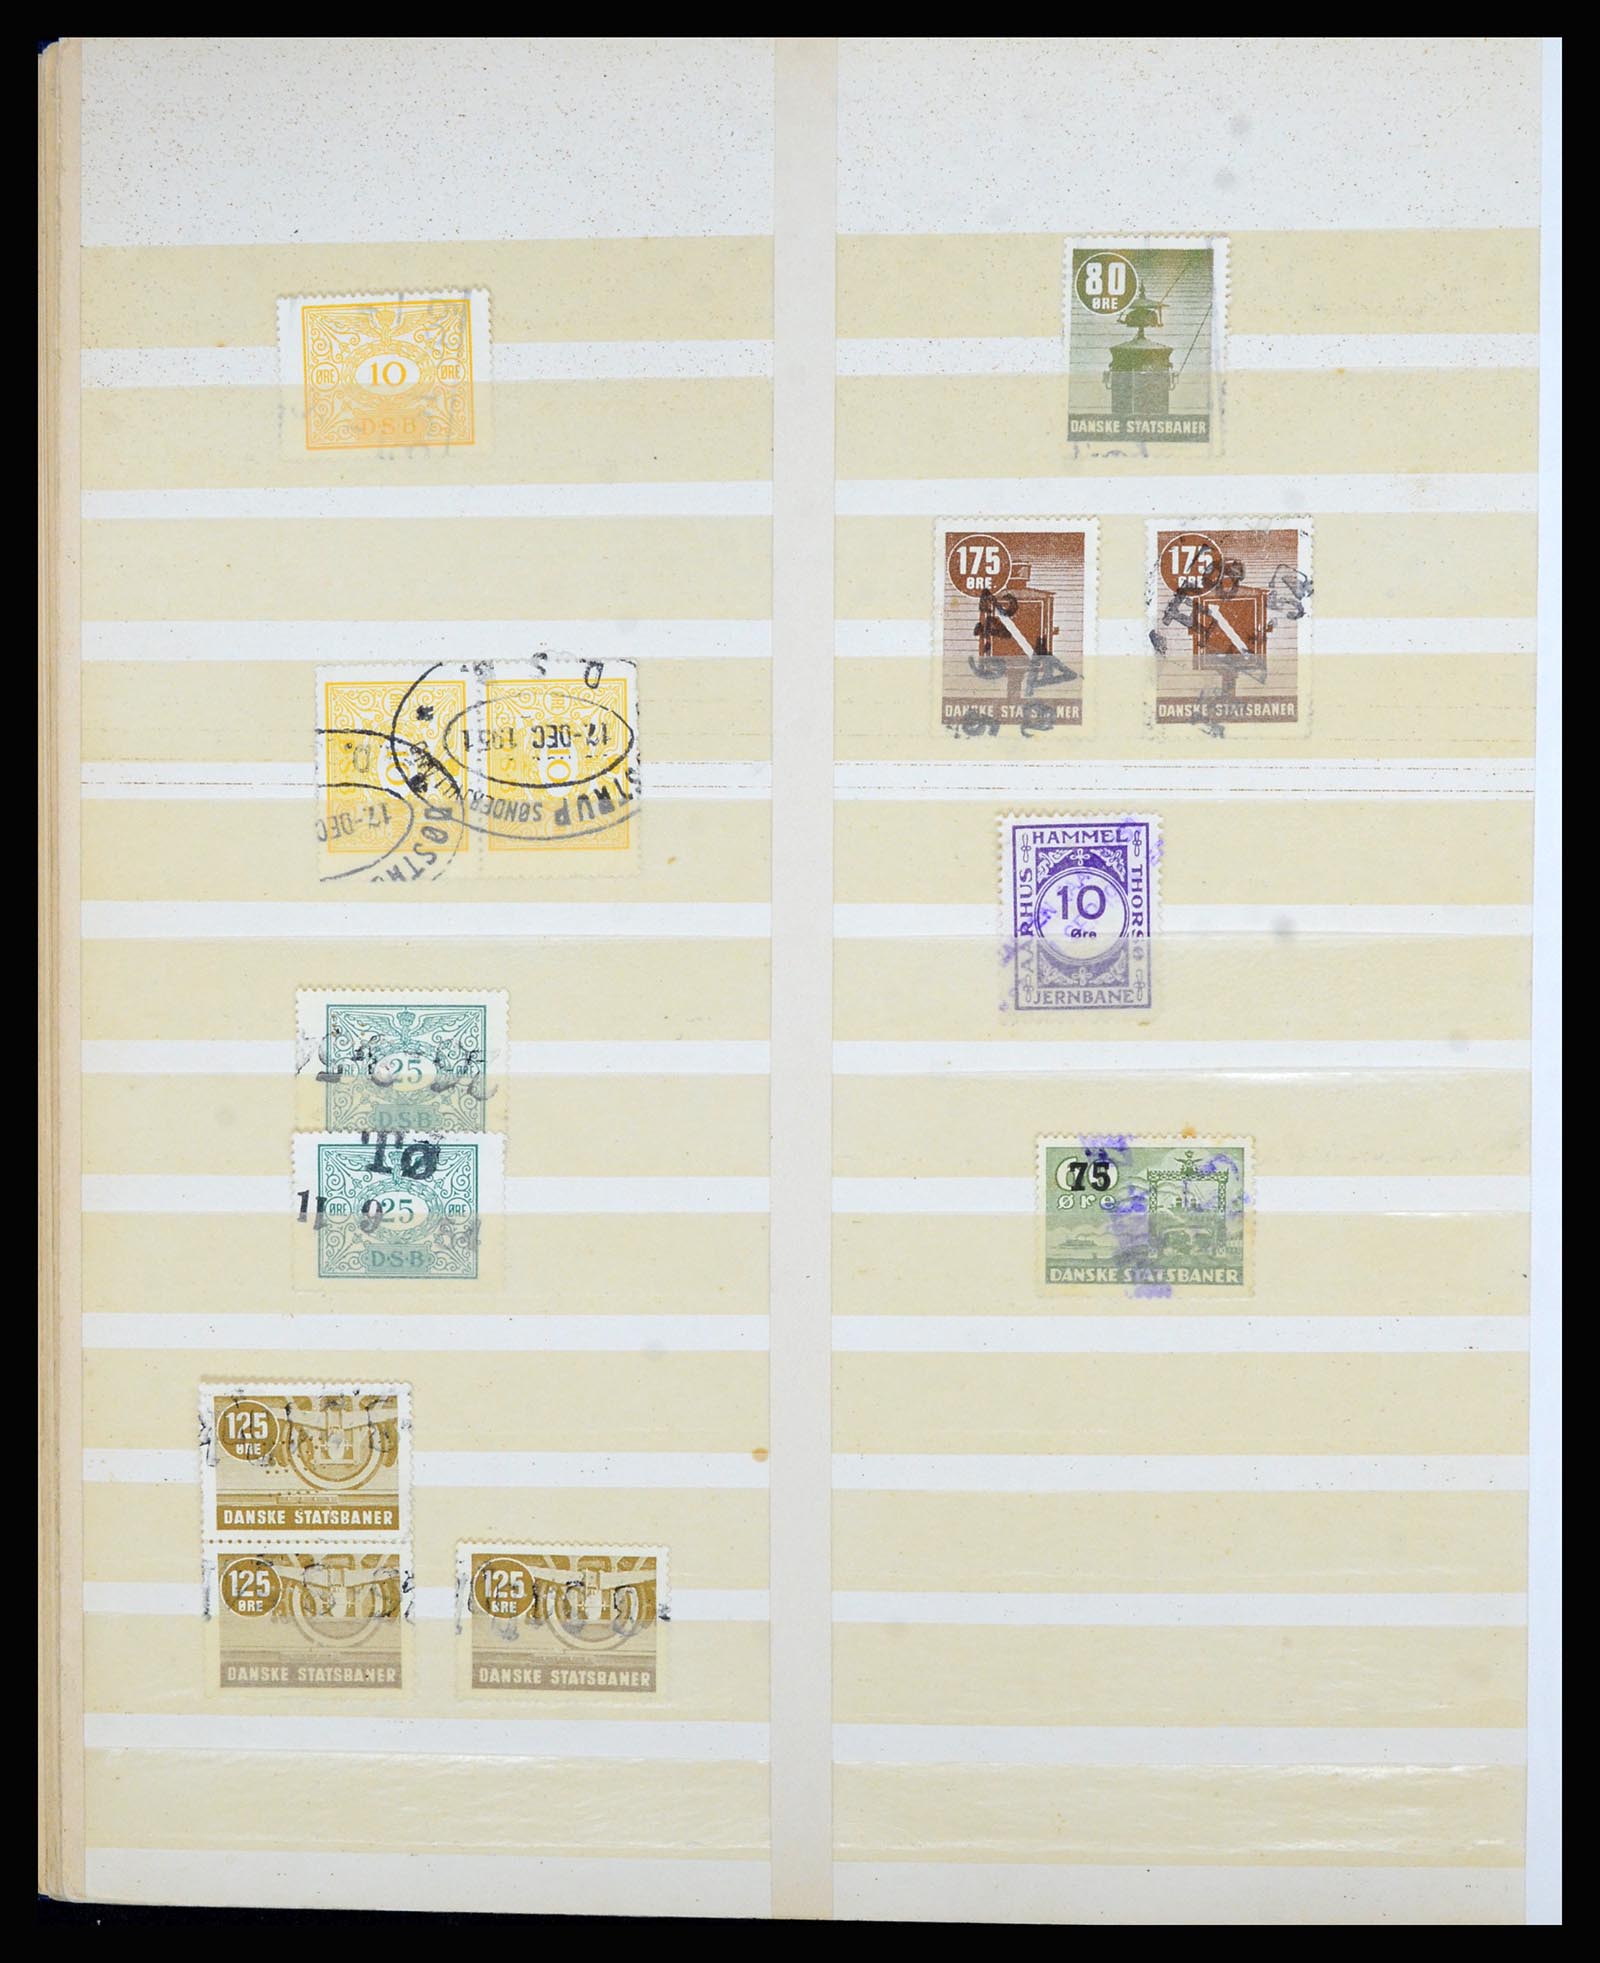 36767 020 - Postzegelverzameling 36767 Denemarken spoorwegzegels.